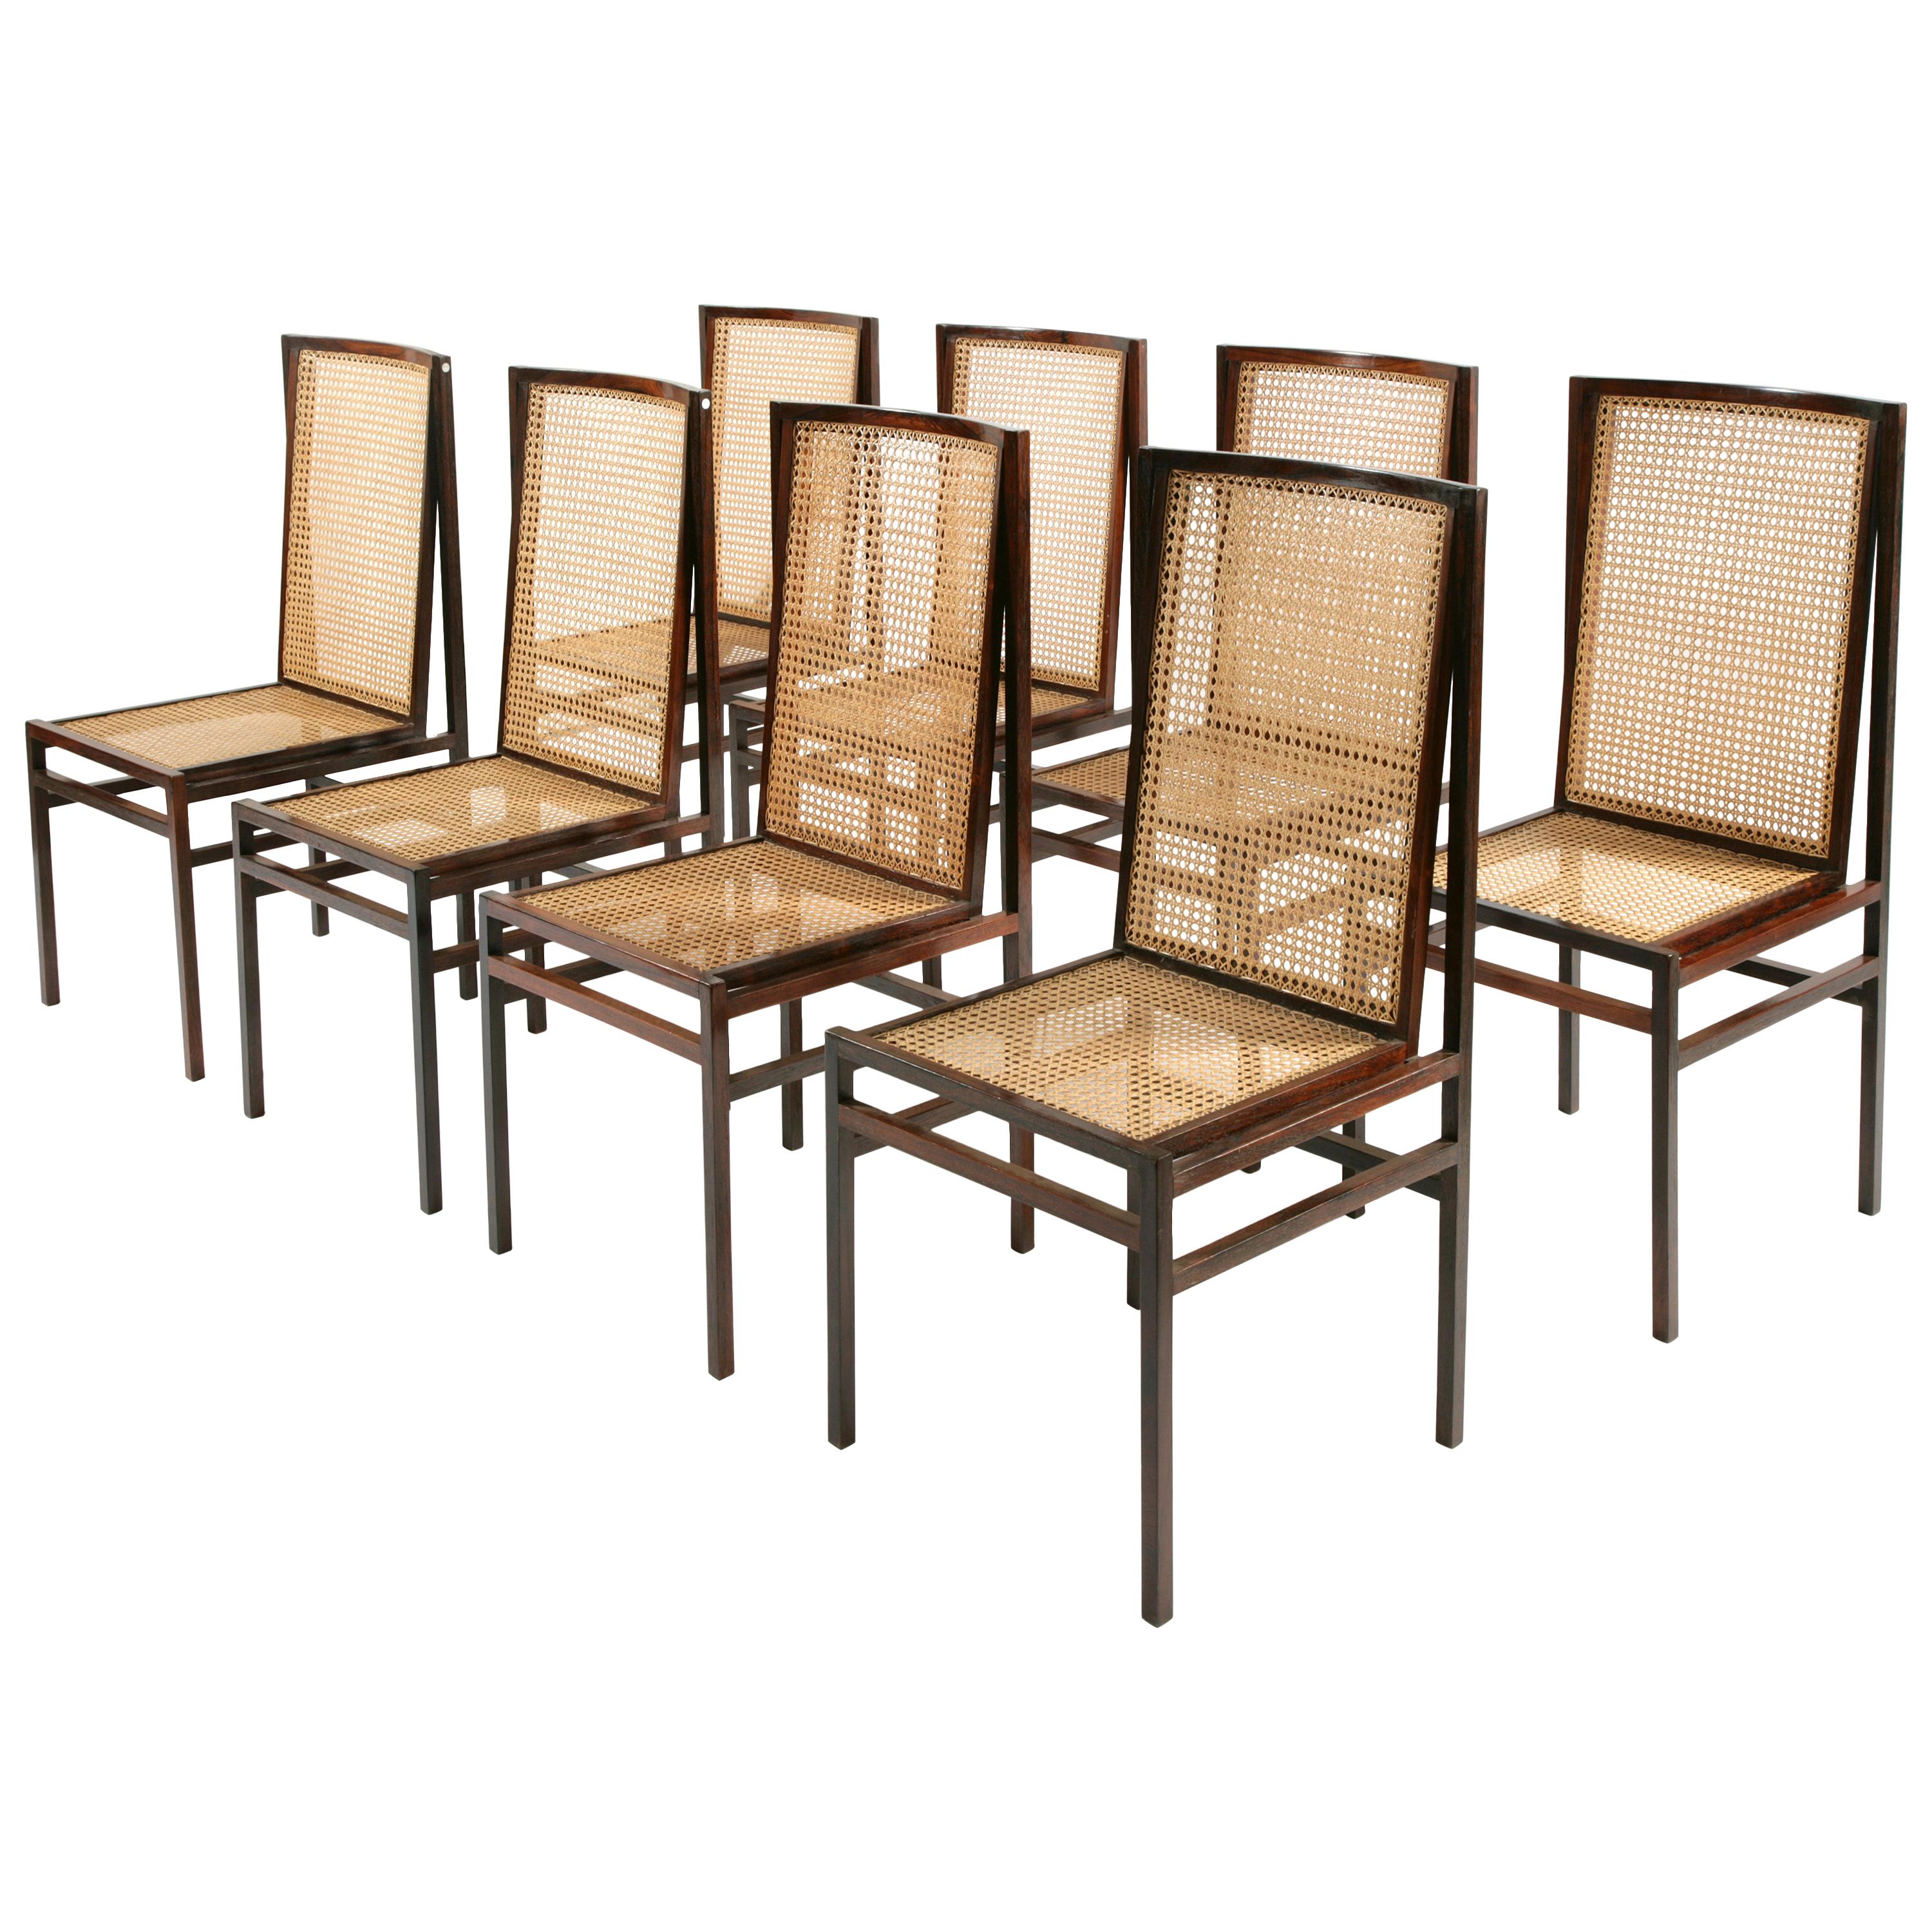 Set of Eight "Itamaraty" Chairs by Joaquim Tenreiro